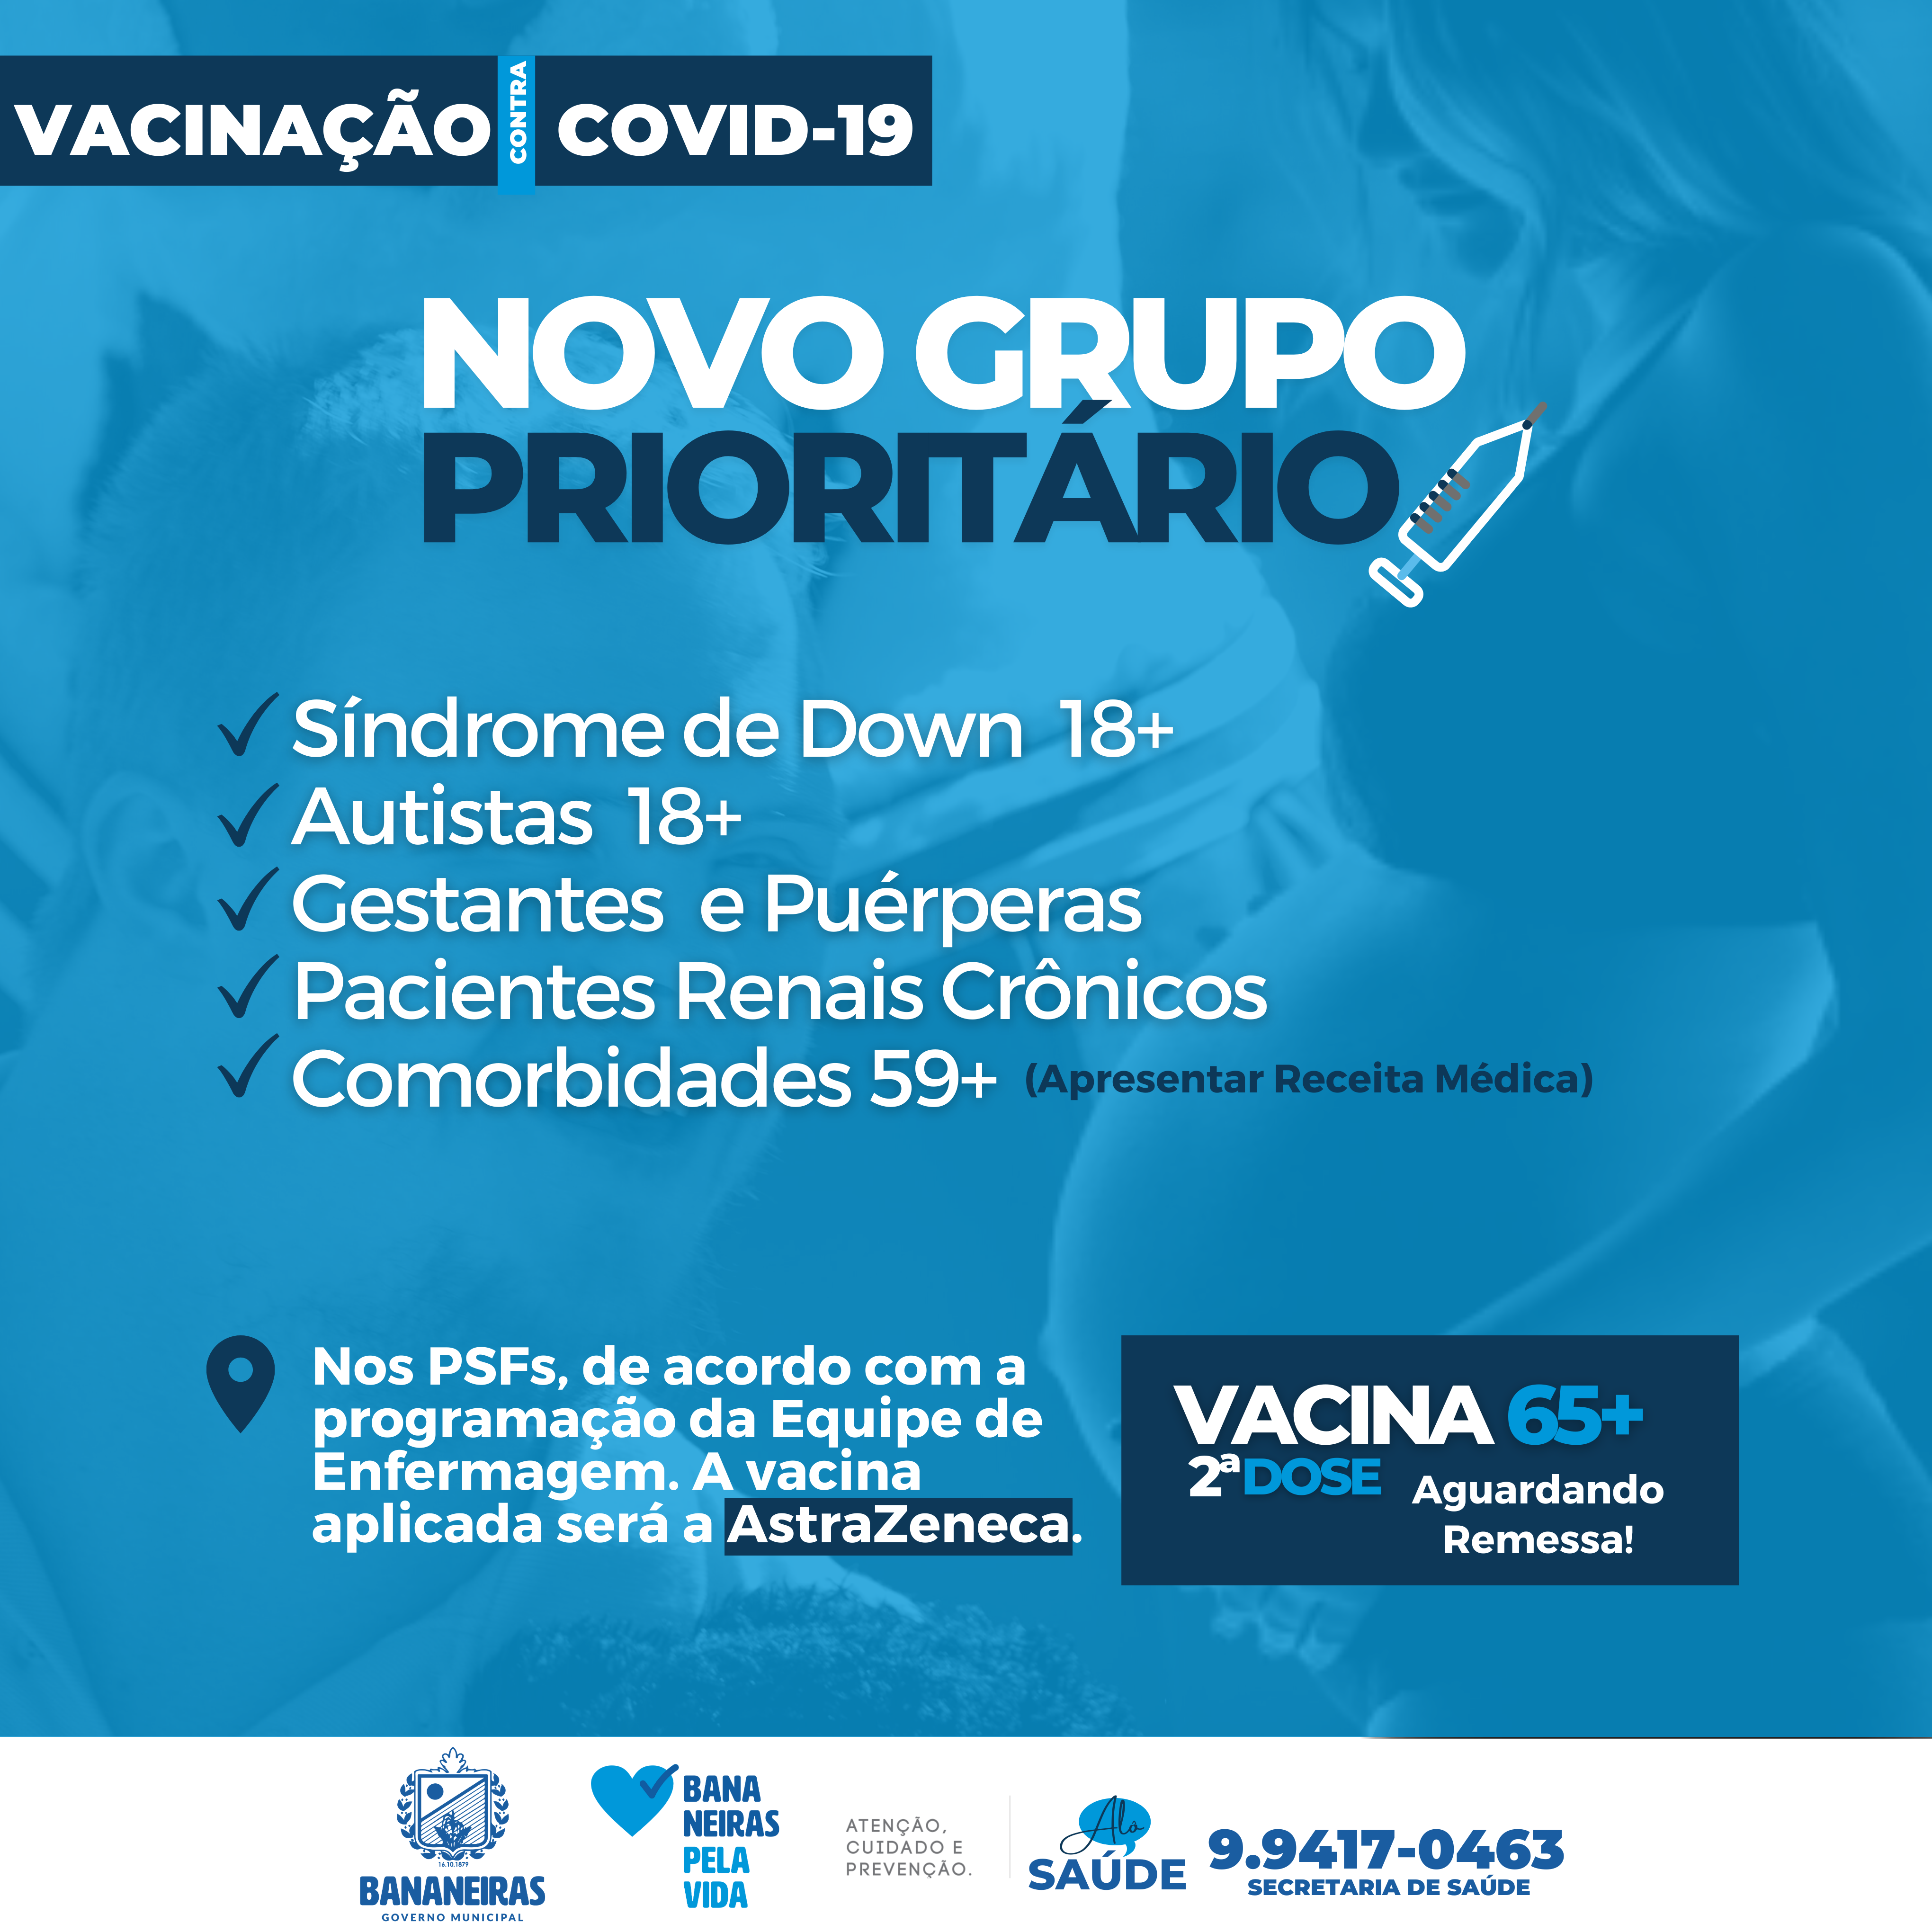 Vacinação contra a COVID-19 em Bananeiras avança para mais um grupo prioritário nesta terça-feira (04)